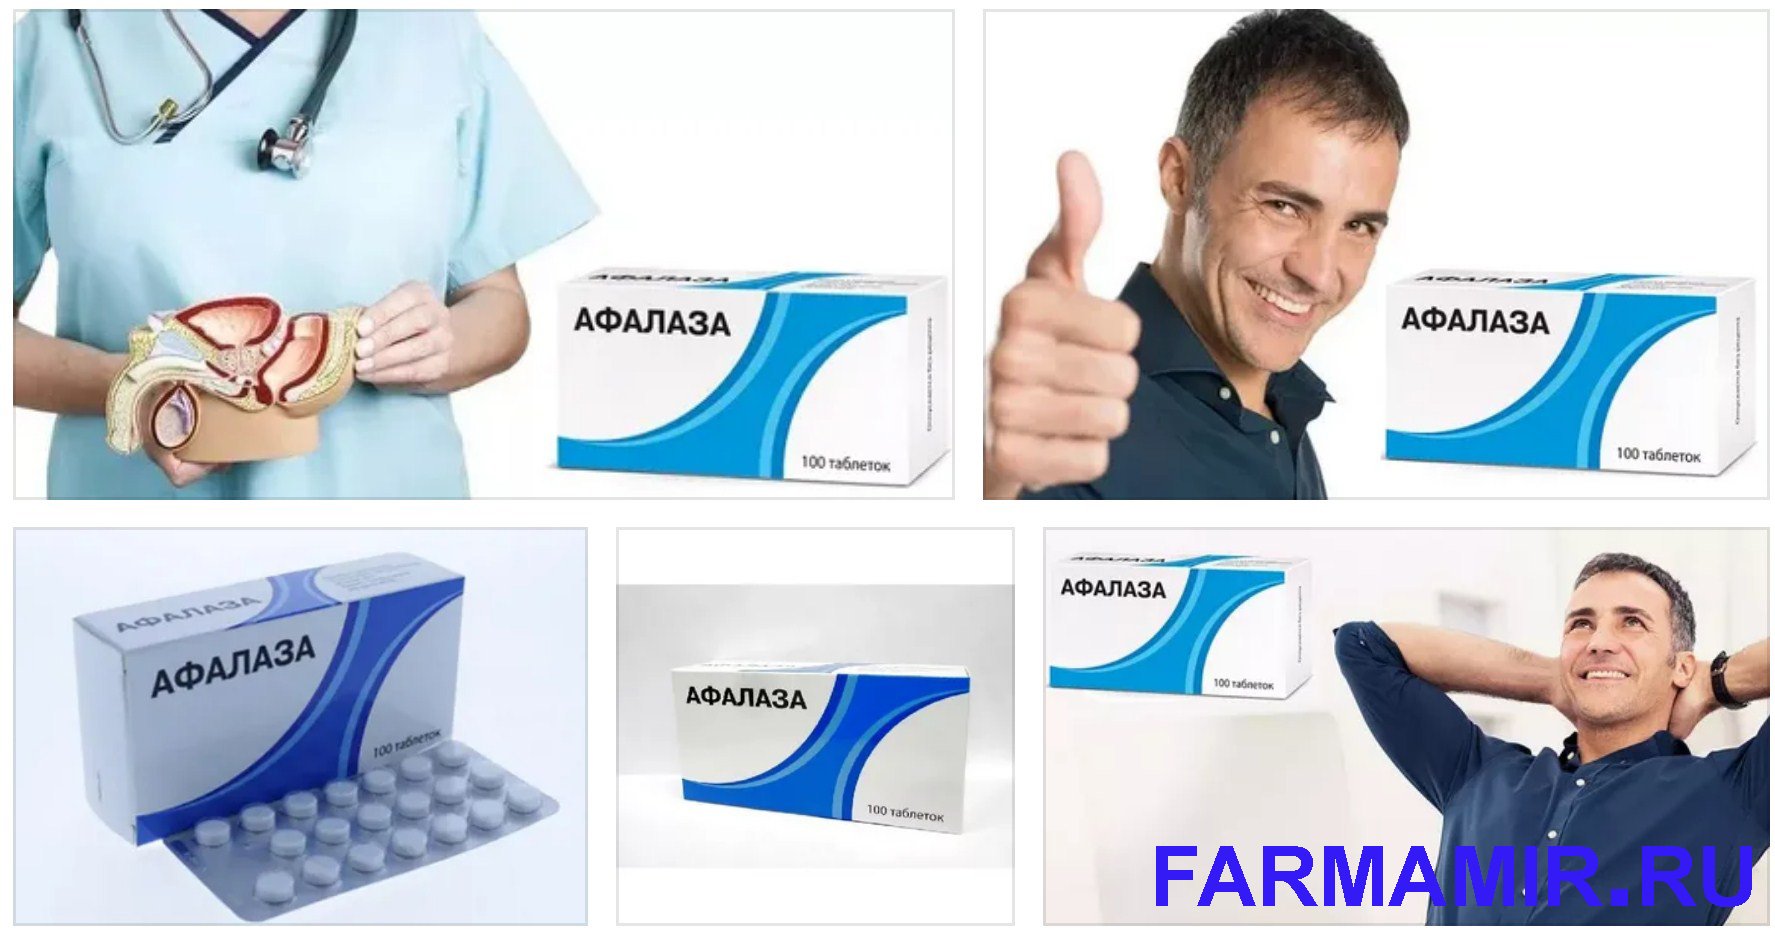 АФАЛАЗА - инструкция по применению, таблетки для лечения простаты